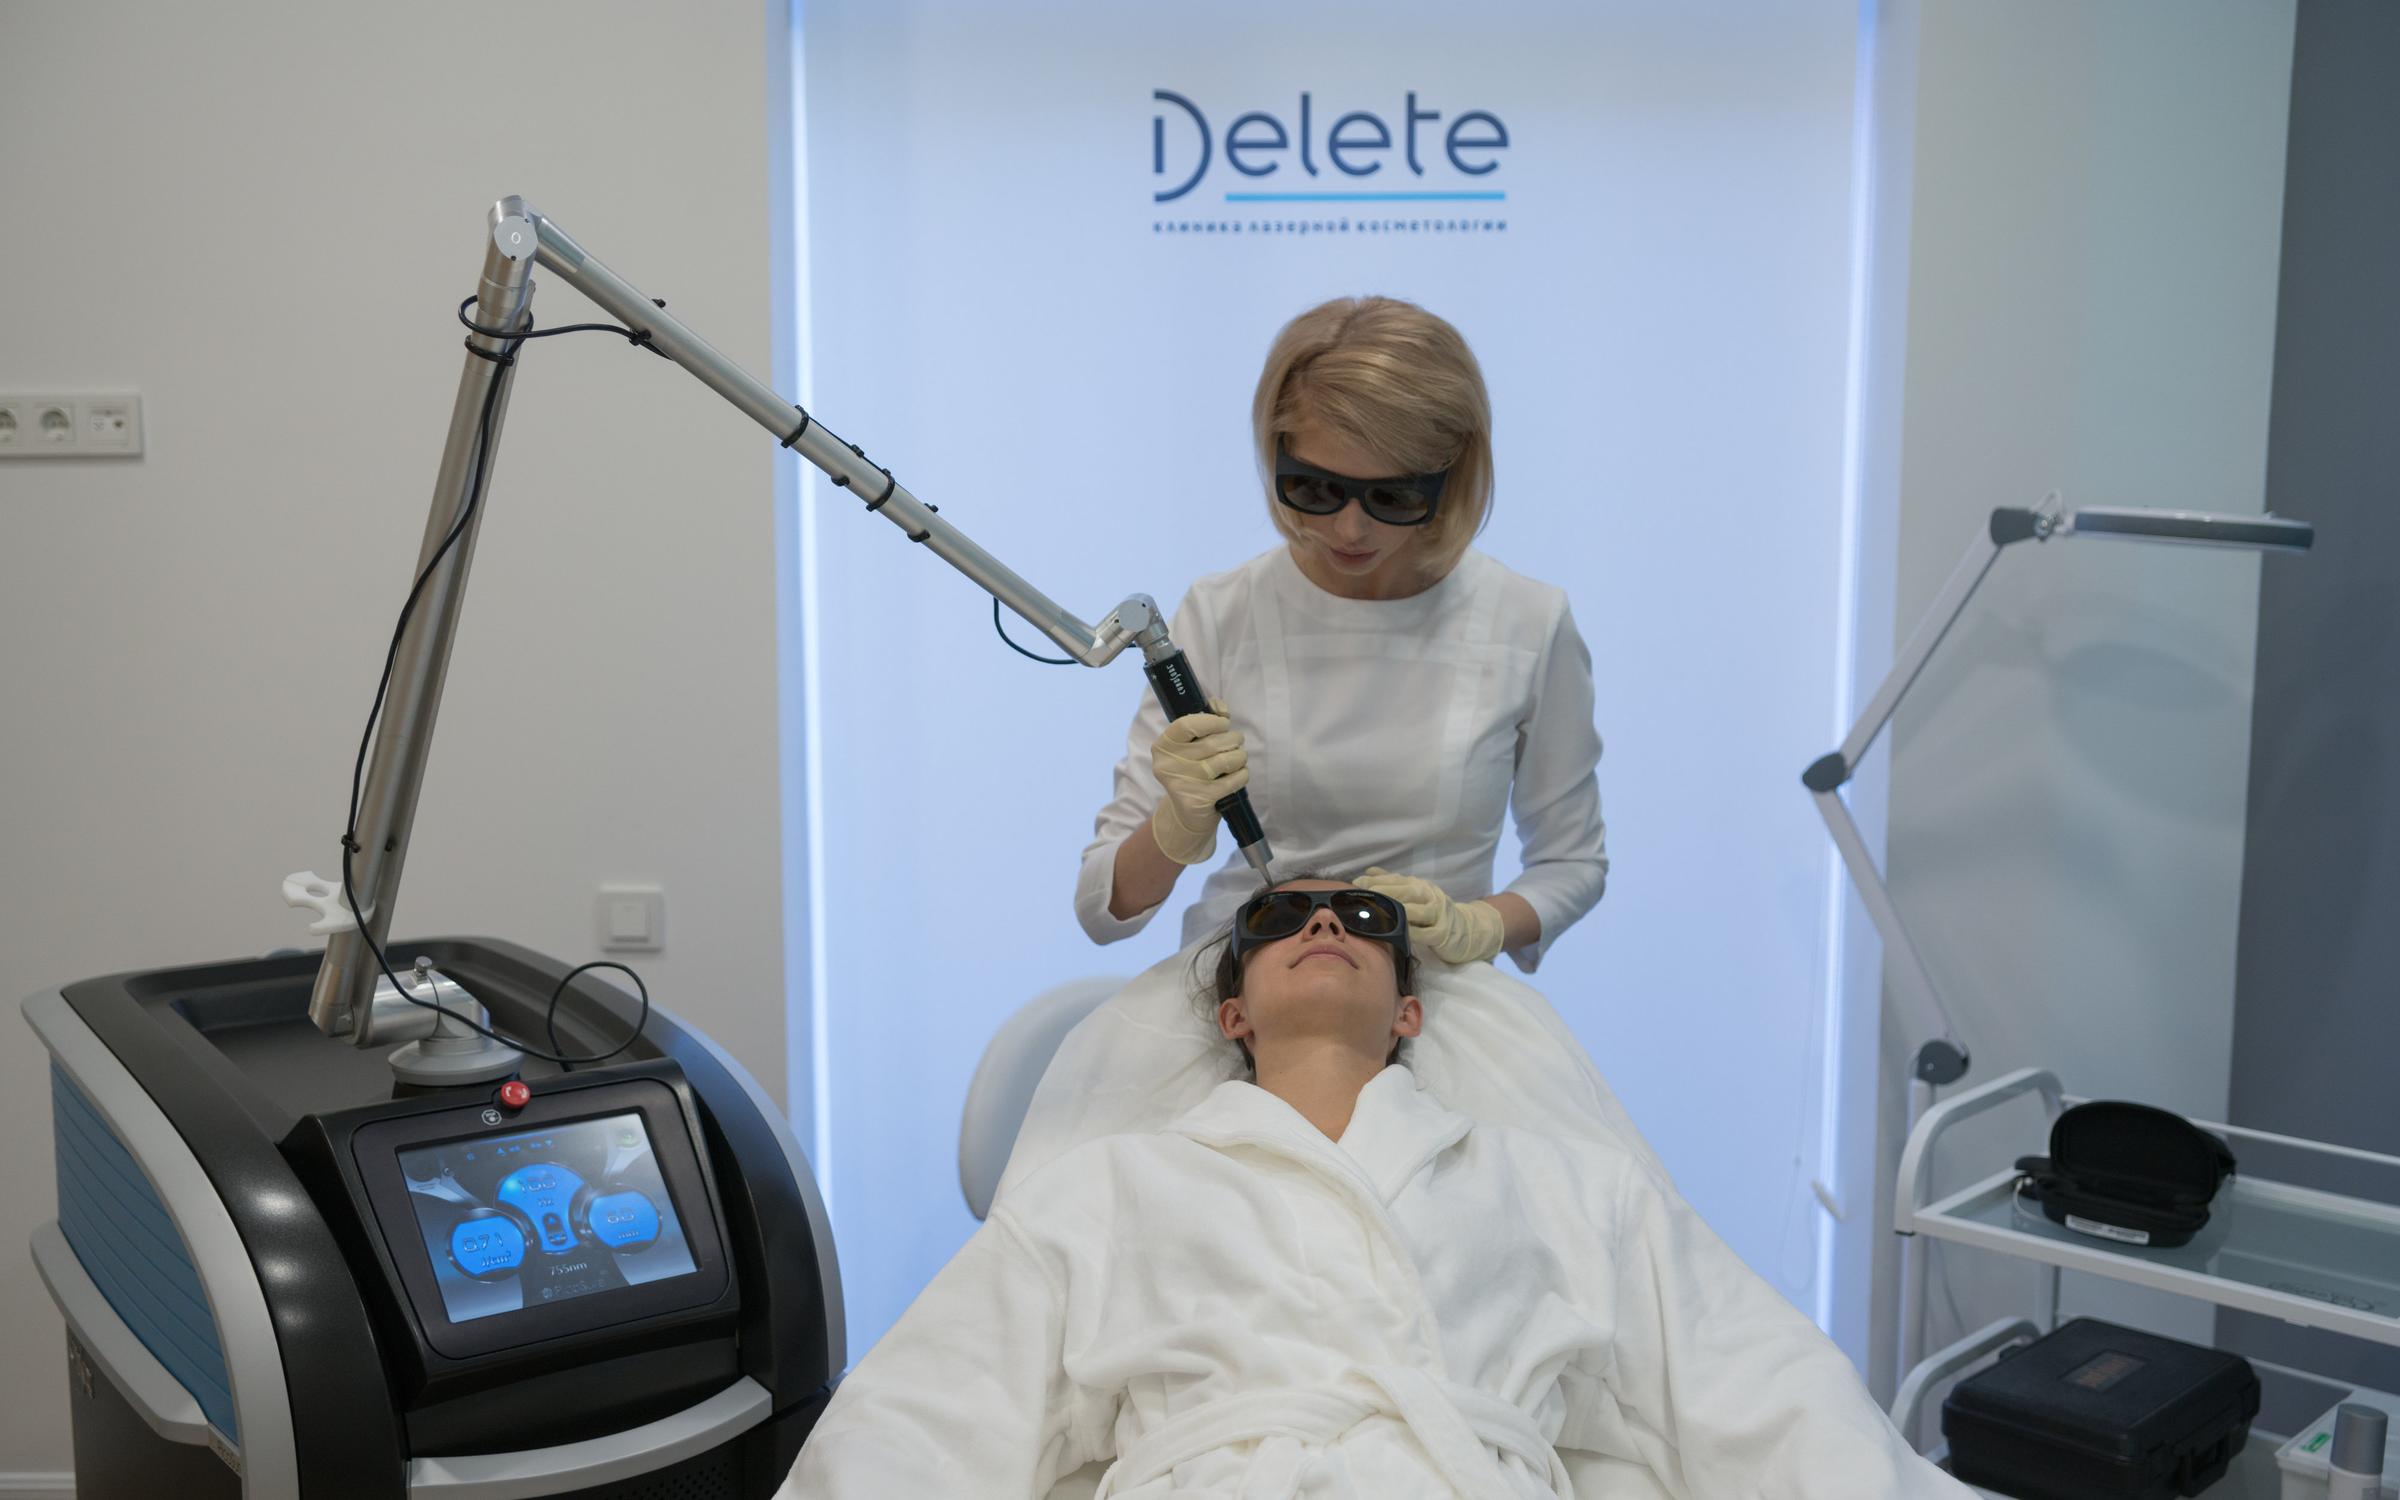 как правило, дорогие клиники лазерной косметологии технология предполагает использование